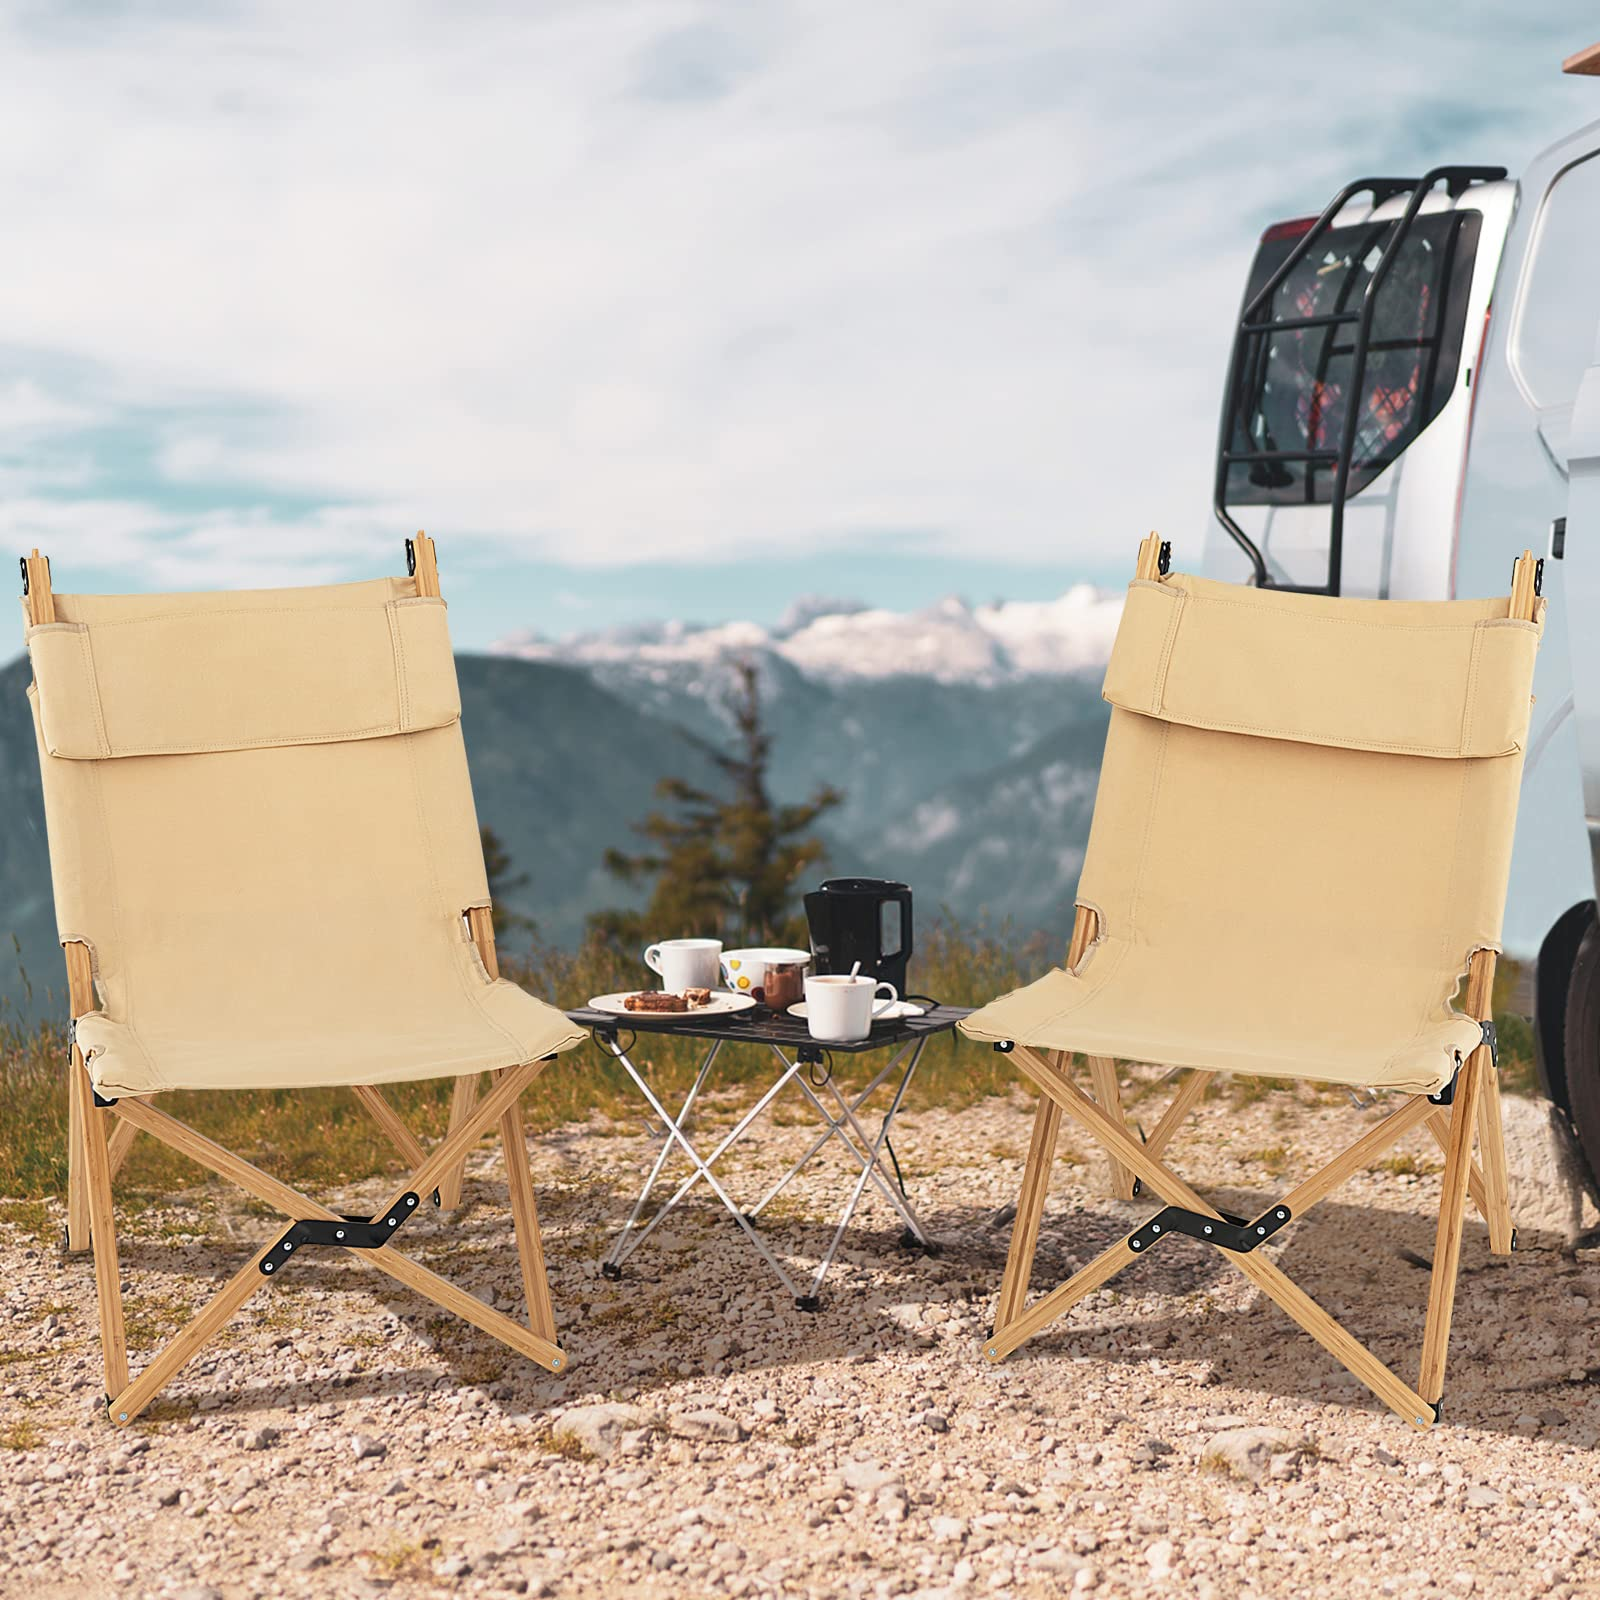 Giantex Folding Camping Chairs